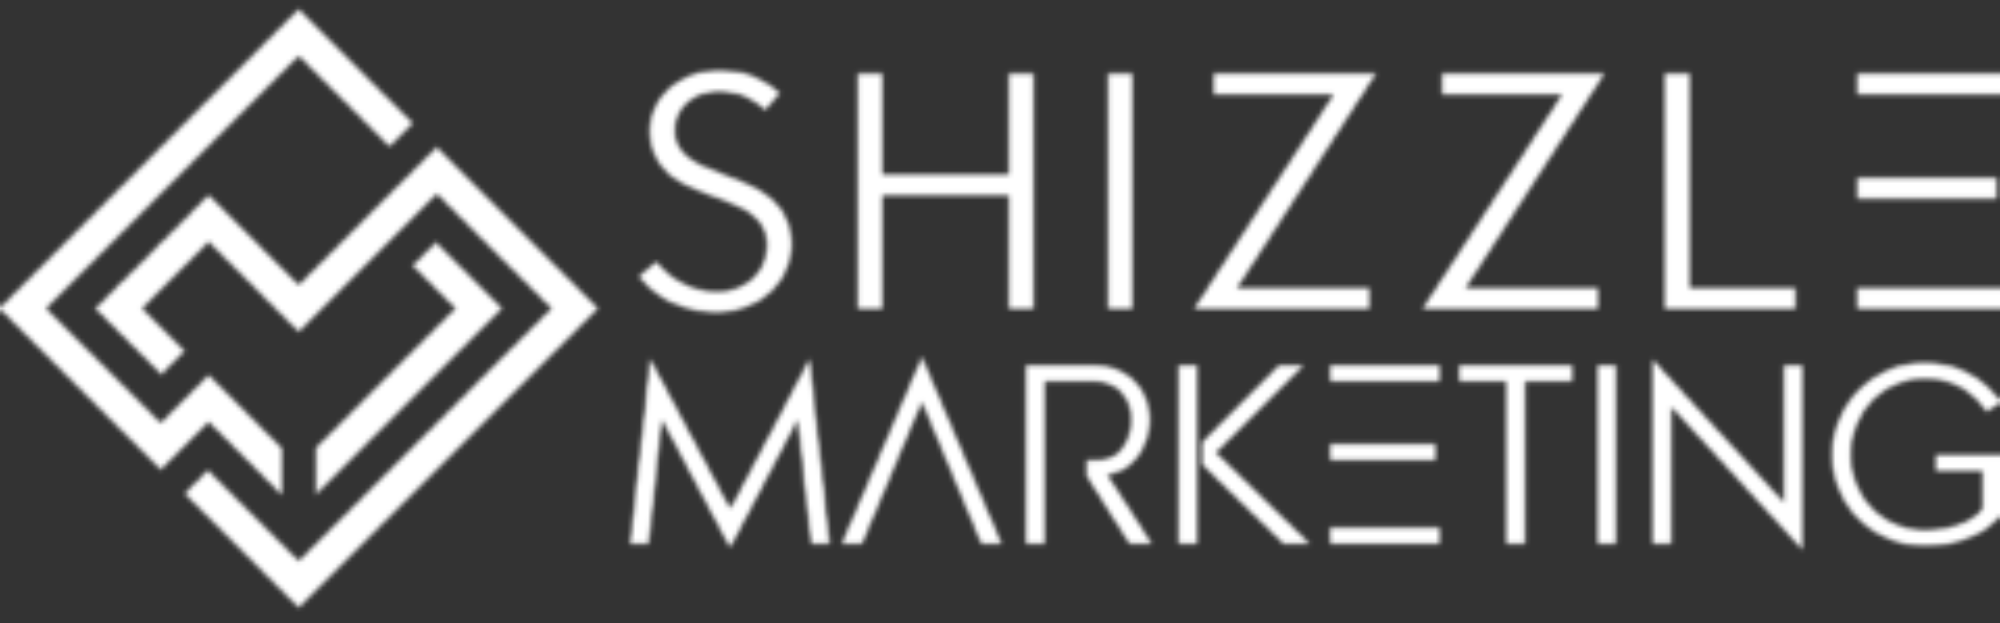 Shizzle Marketing Agency Logo